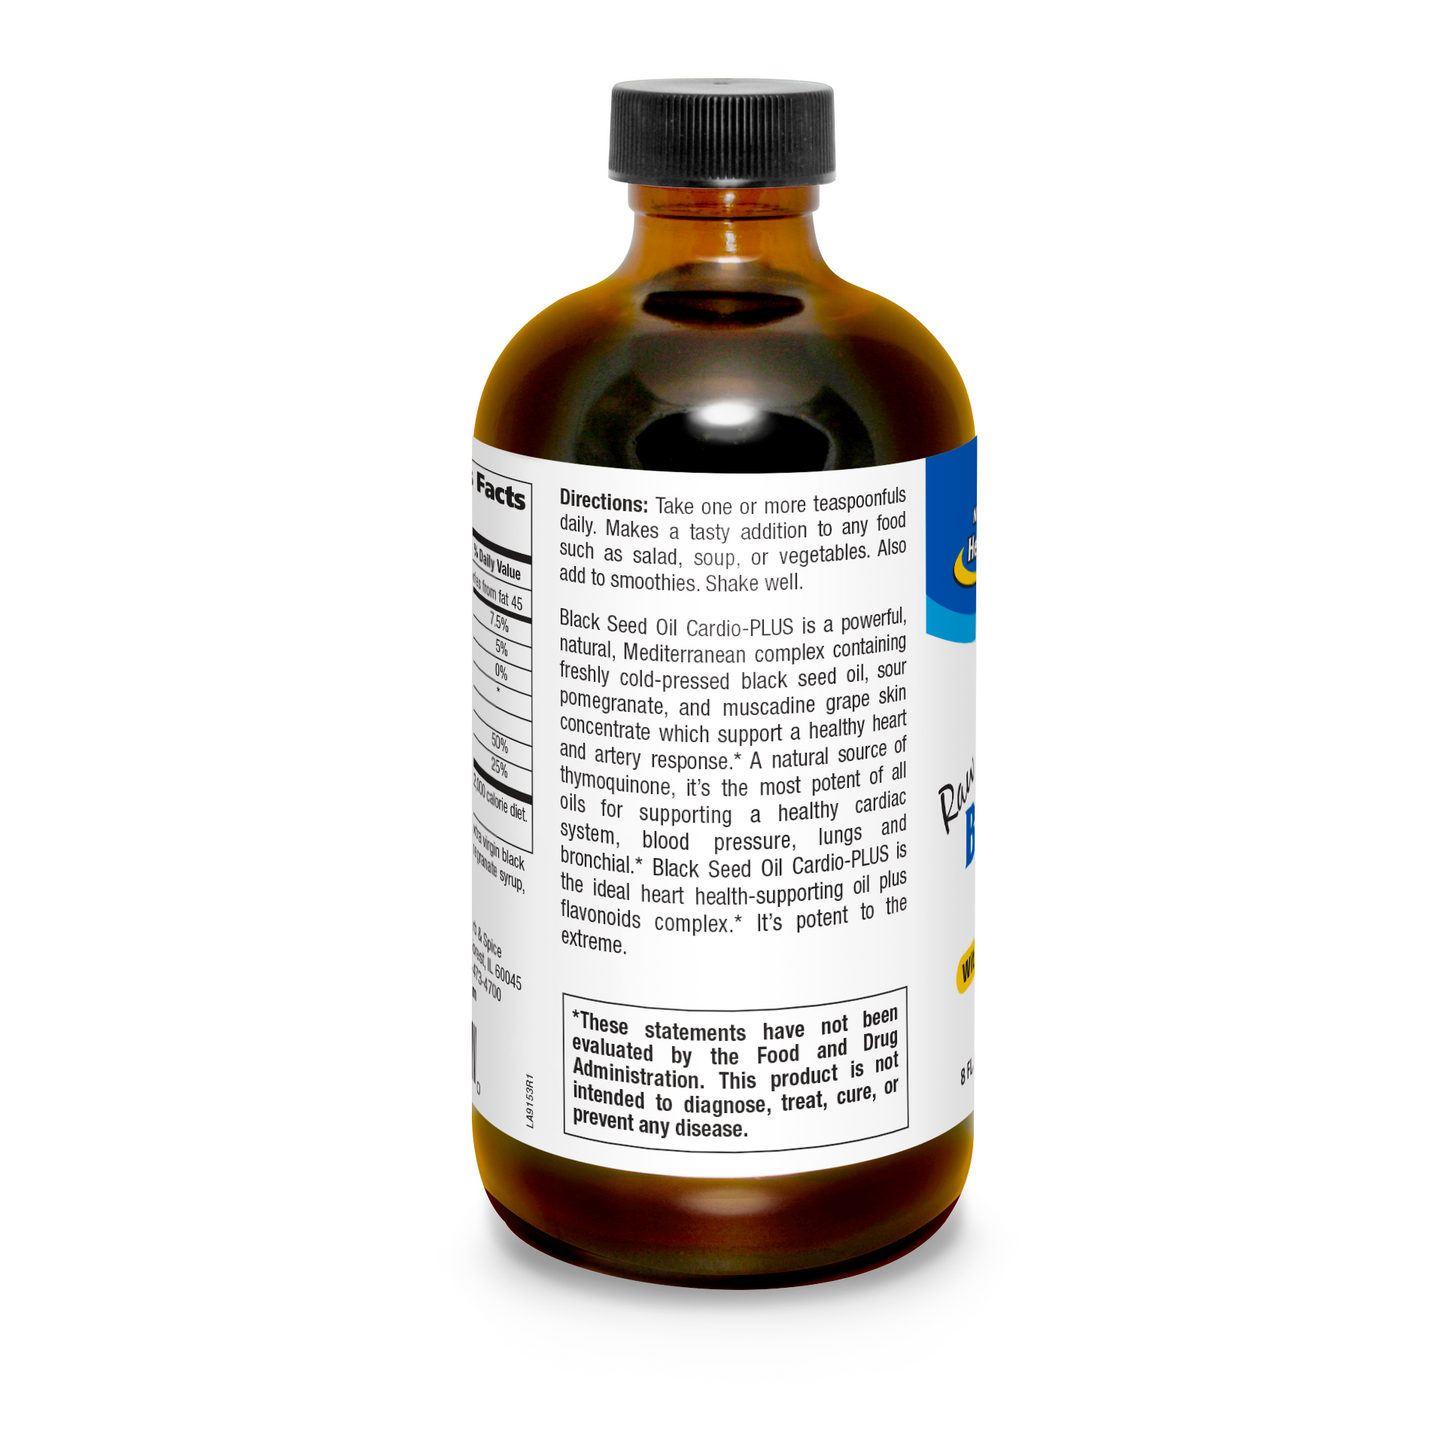 Black Seed Oil Cardio-Plus